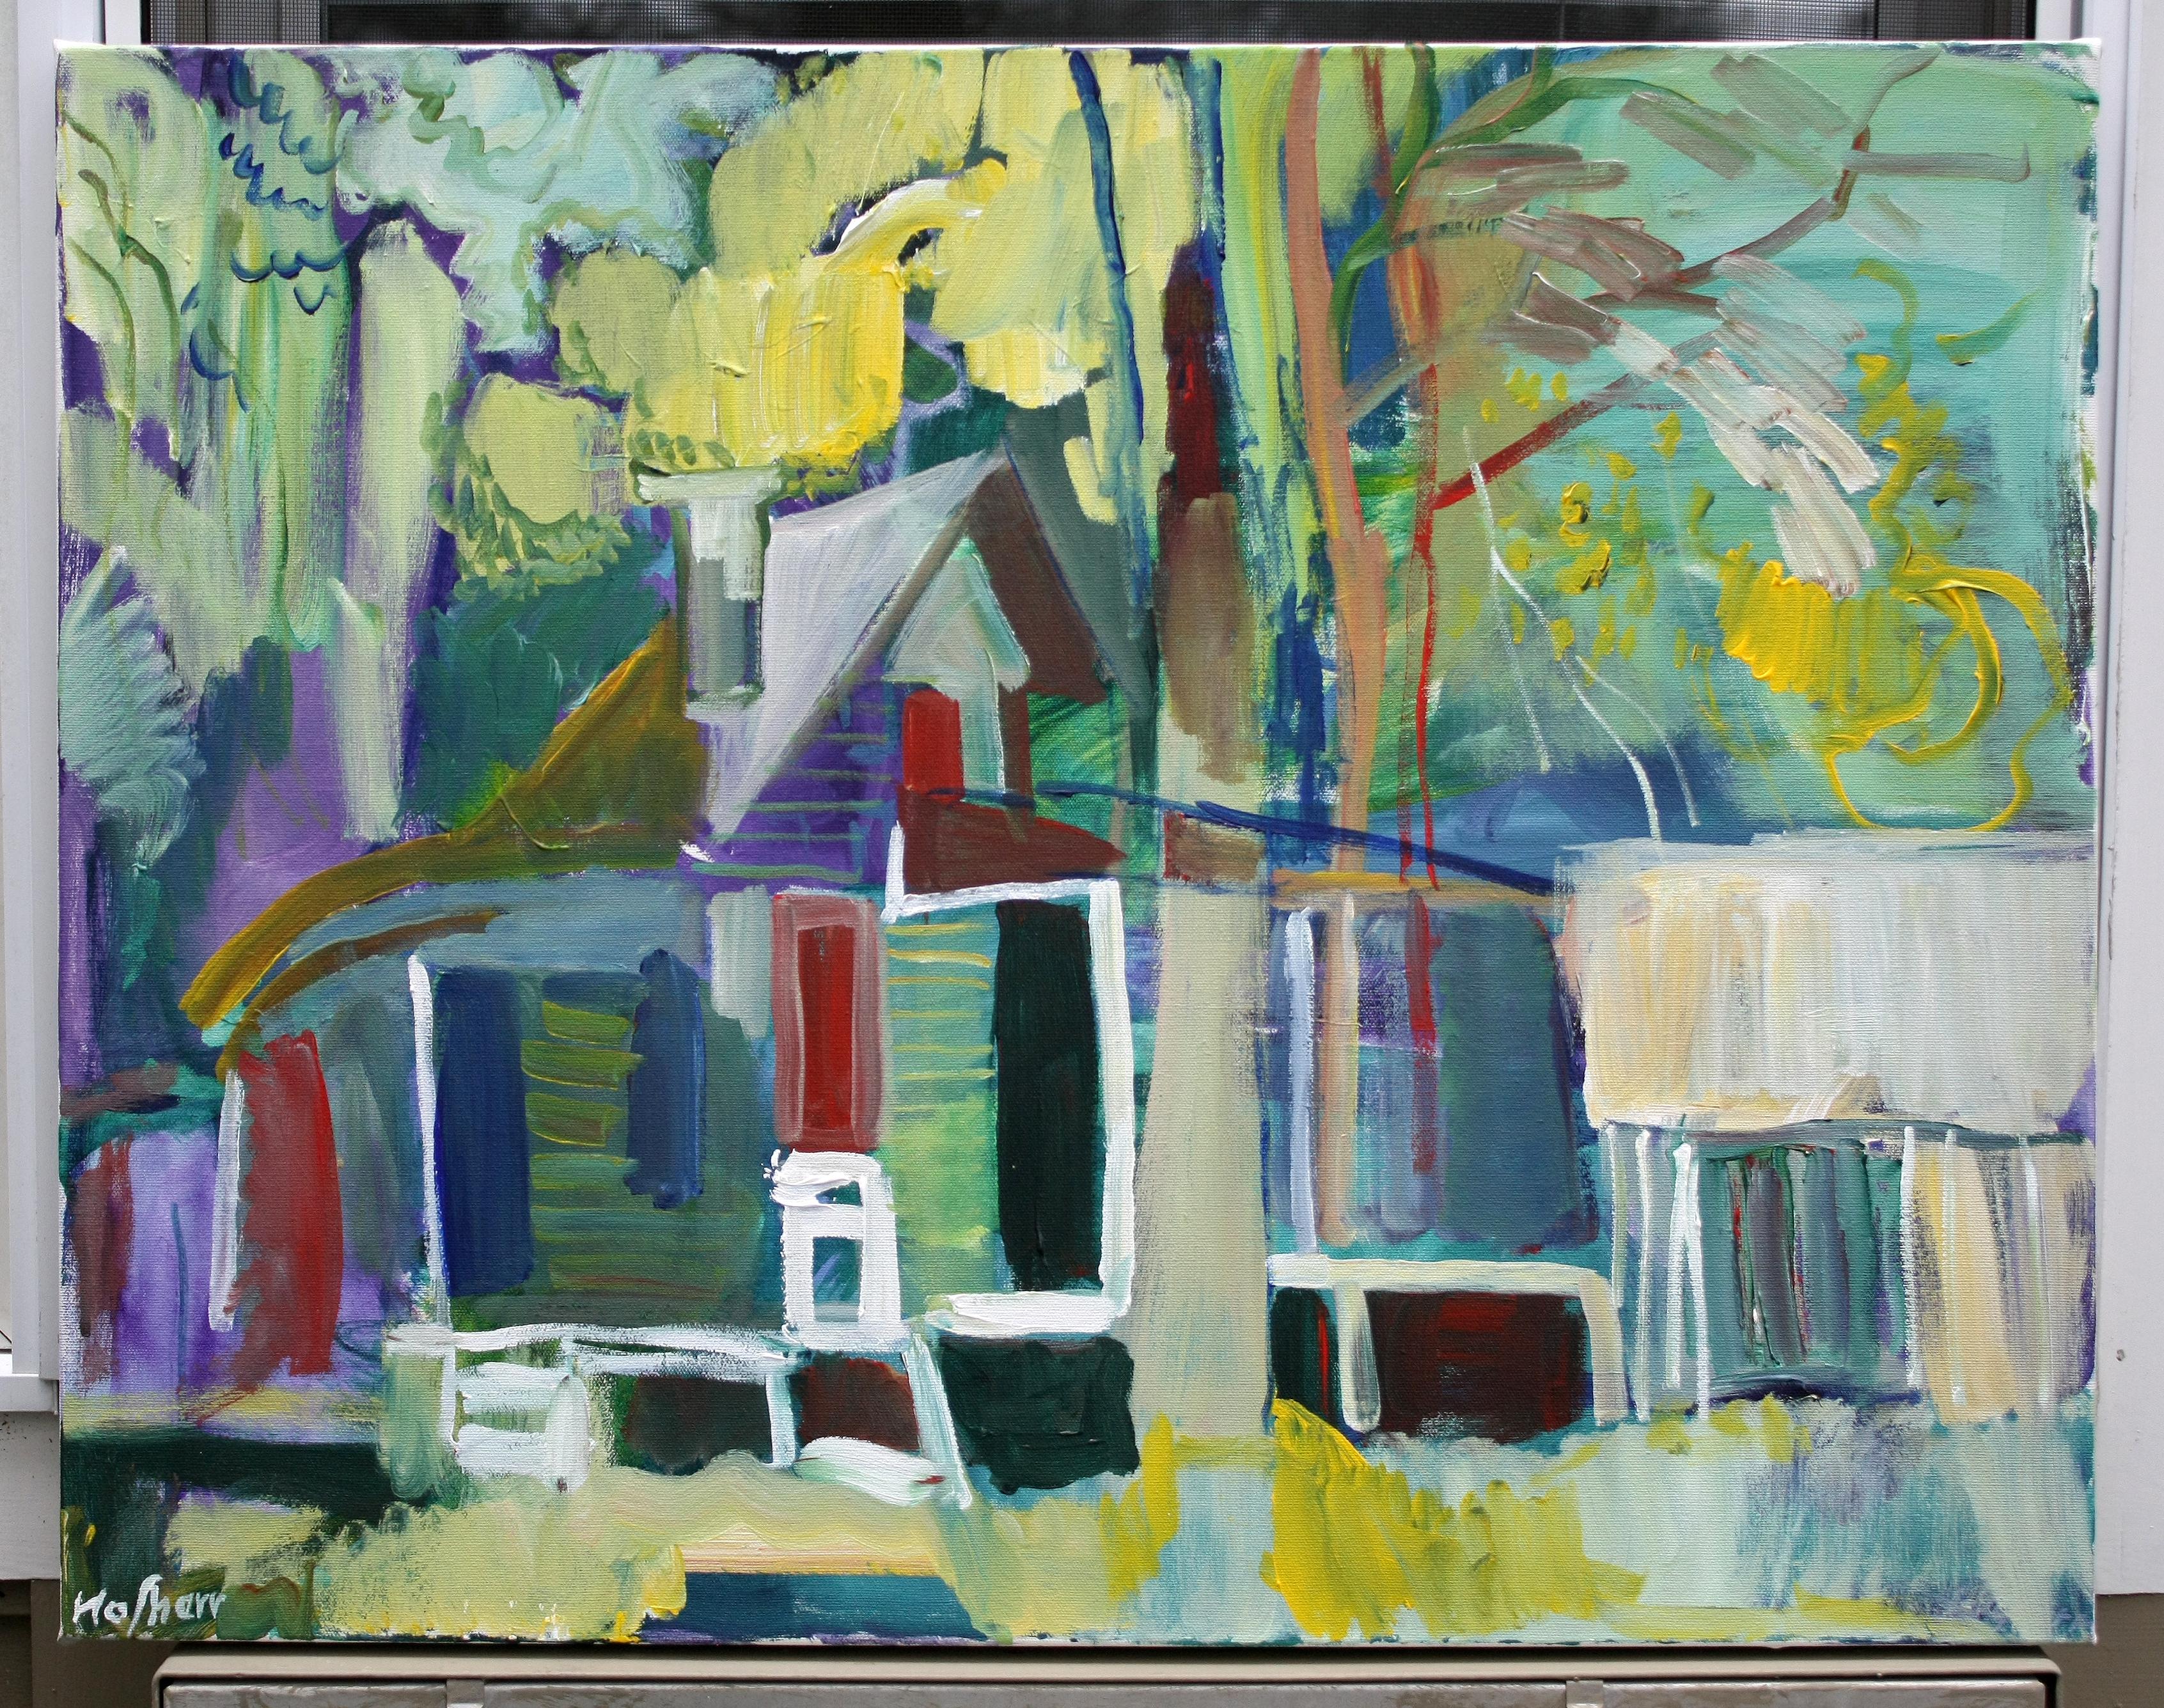 <p>Kommentare des Künstlers<br>Eine expressionistische Darstellung einer Hütte zeigt ihre eklektischen Wände, wobei die umliegenden Wälder als lebendige Formen erscheinen. Die Komposition entfernt sich vom Realismus der Farben und der einfachen